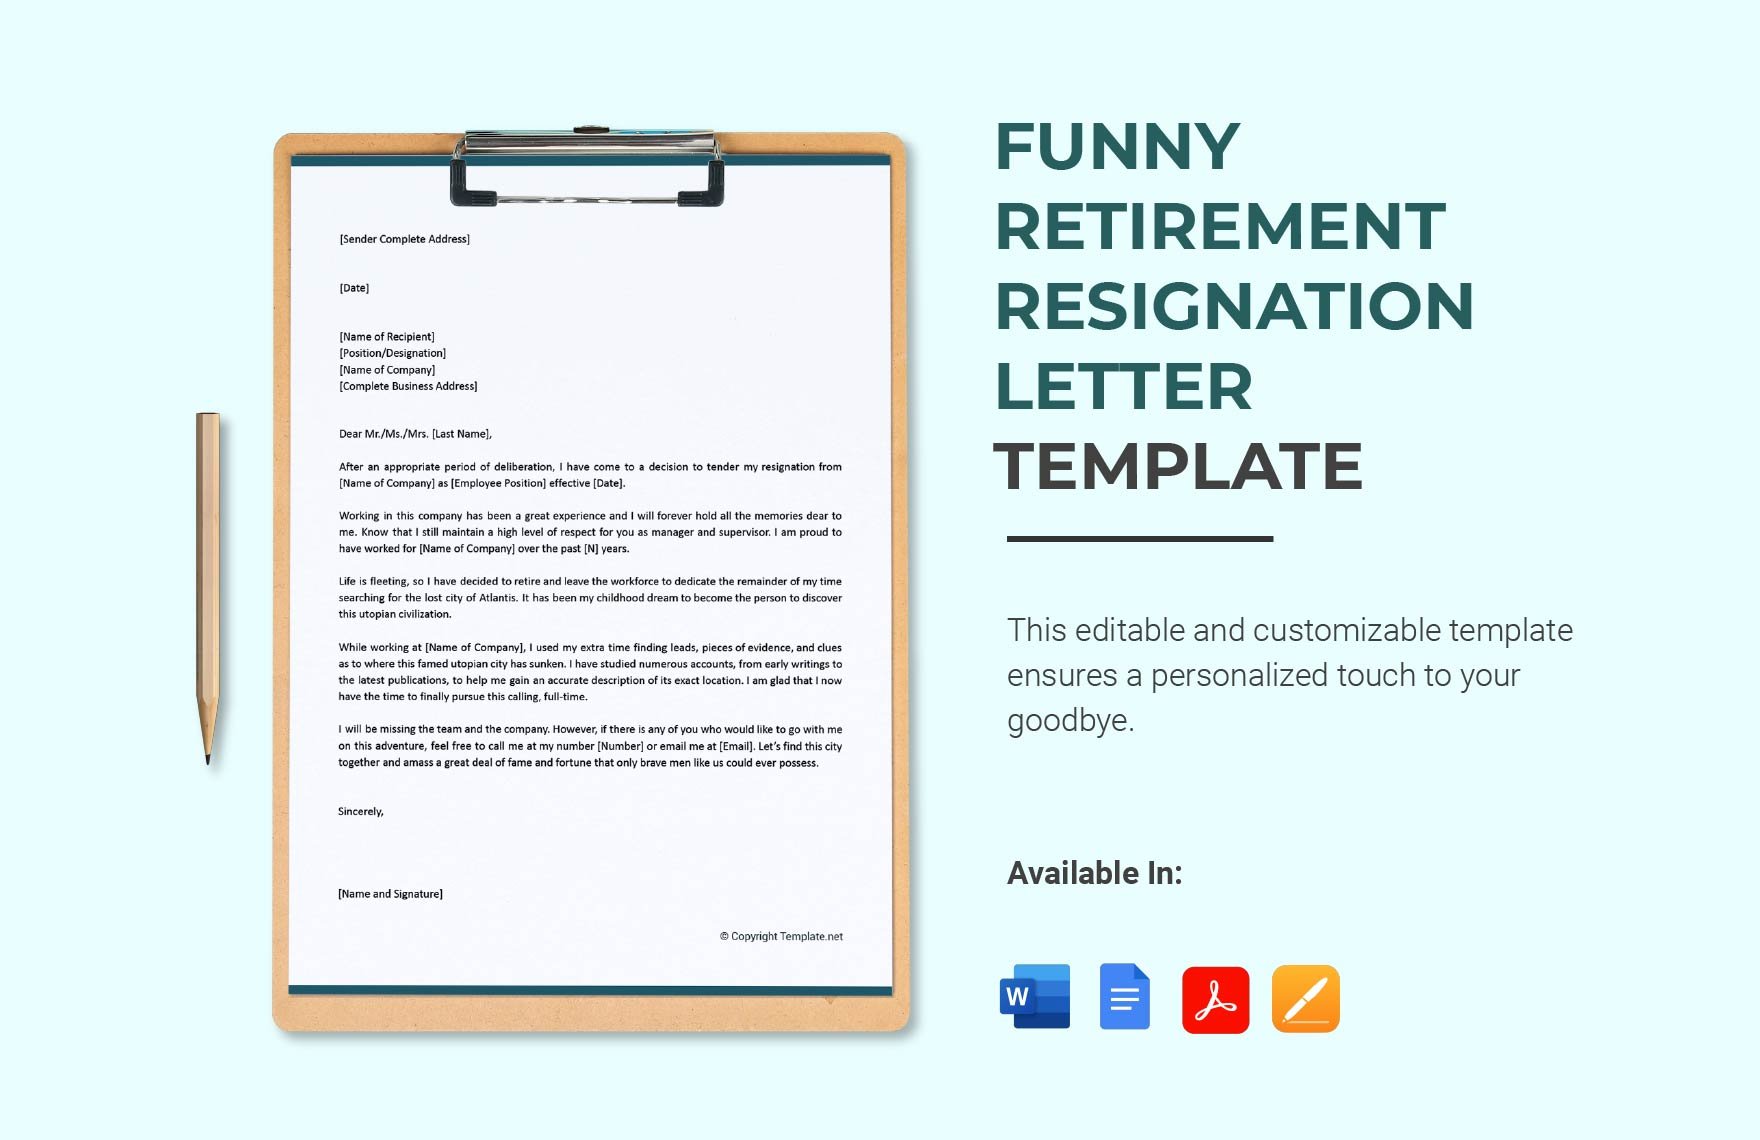 Funny Retirement Resignation Letter